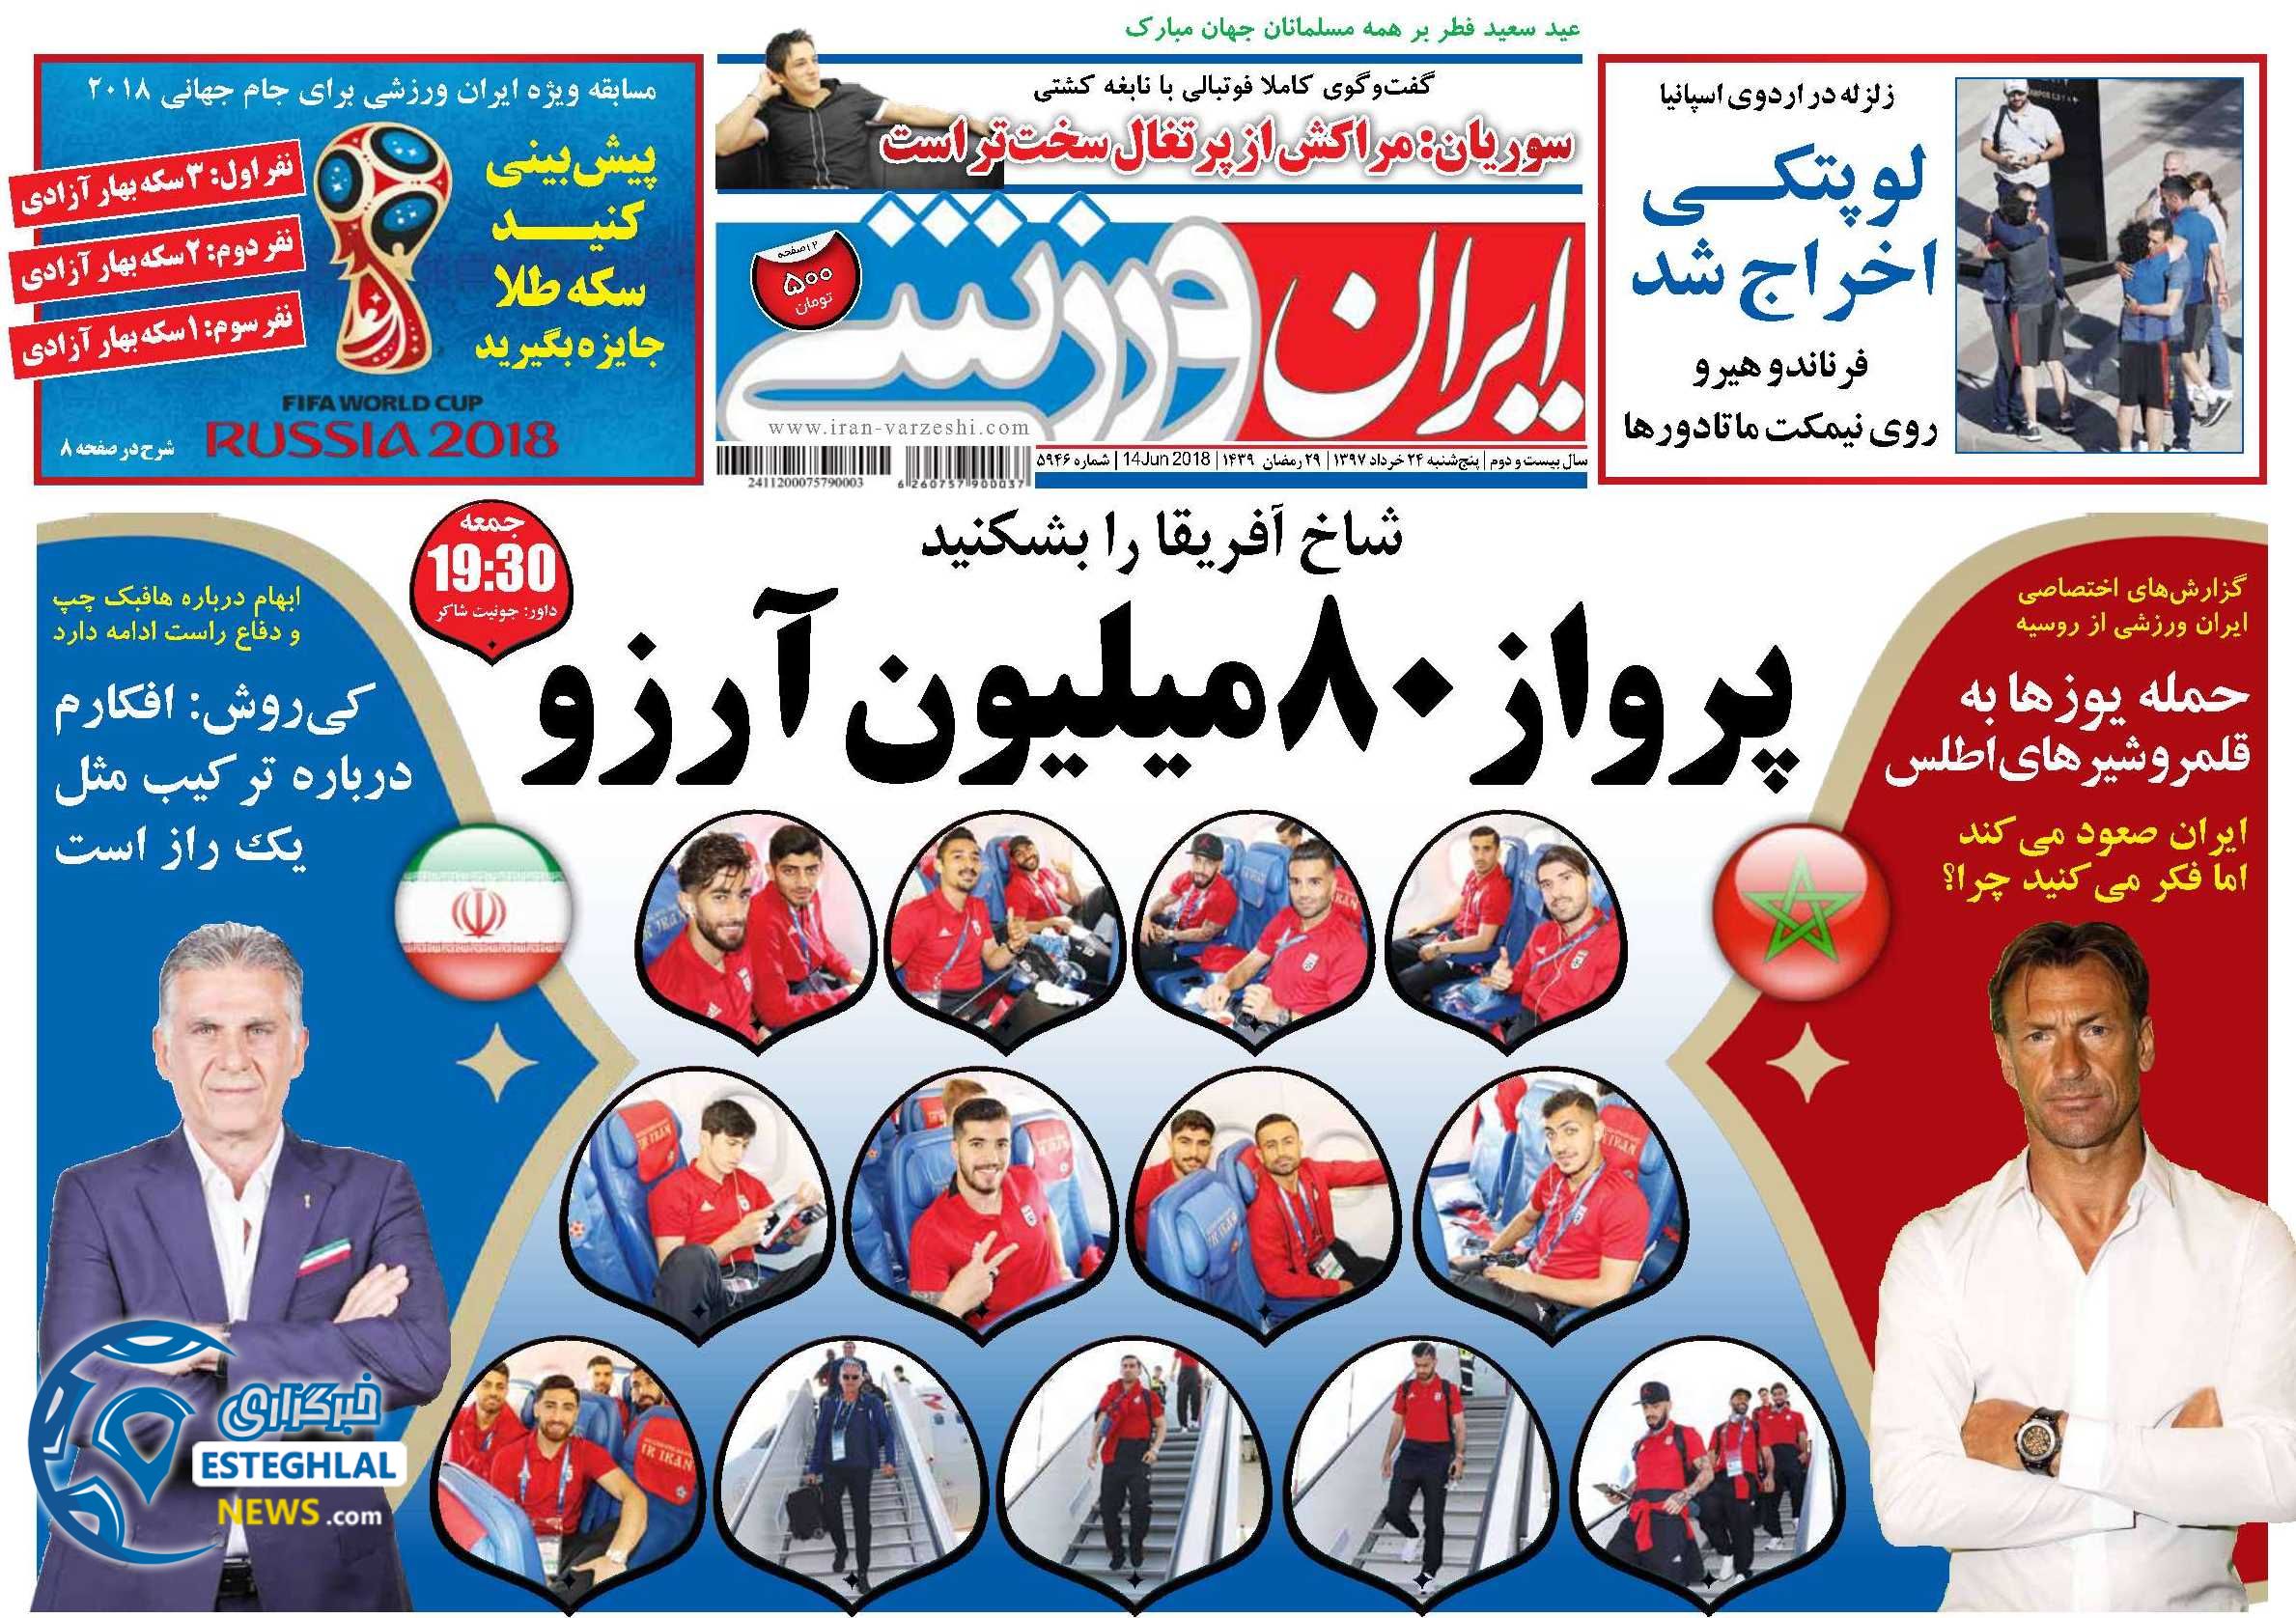   روزنامه ایران ورزشی پنجشنبه 24خرداد 1397    